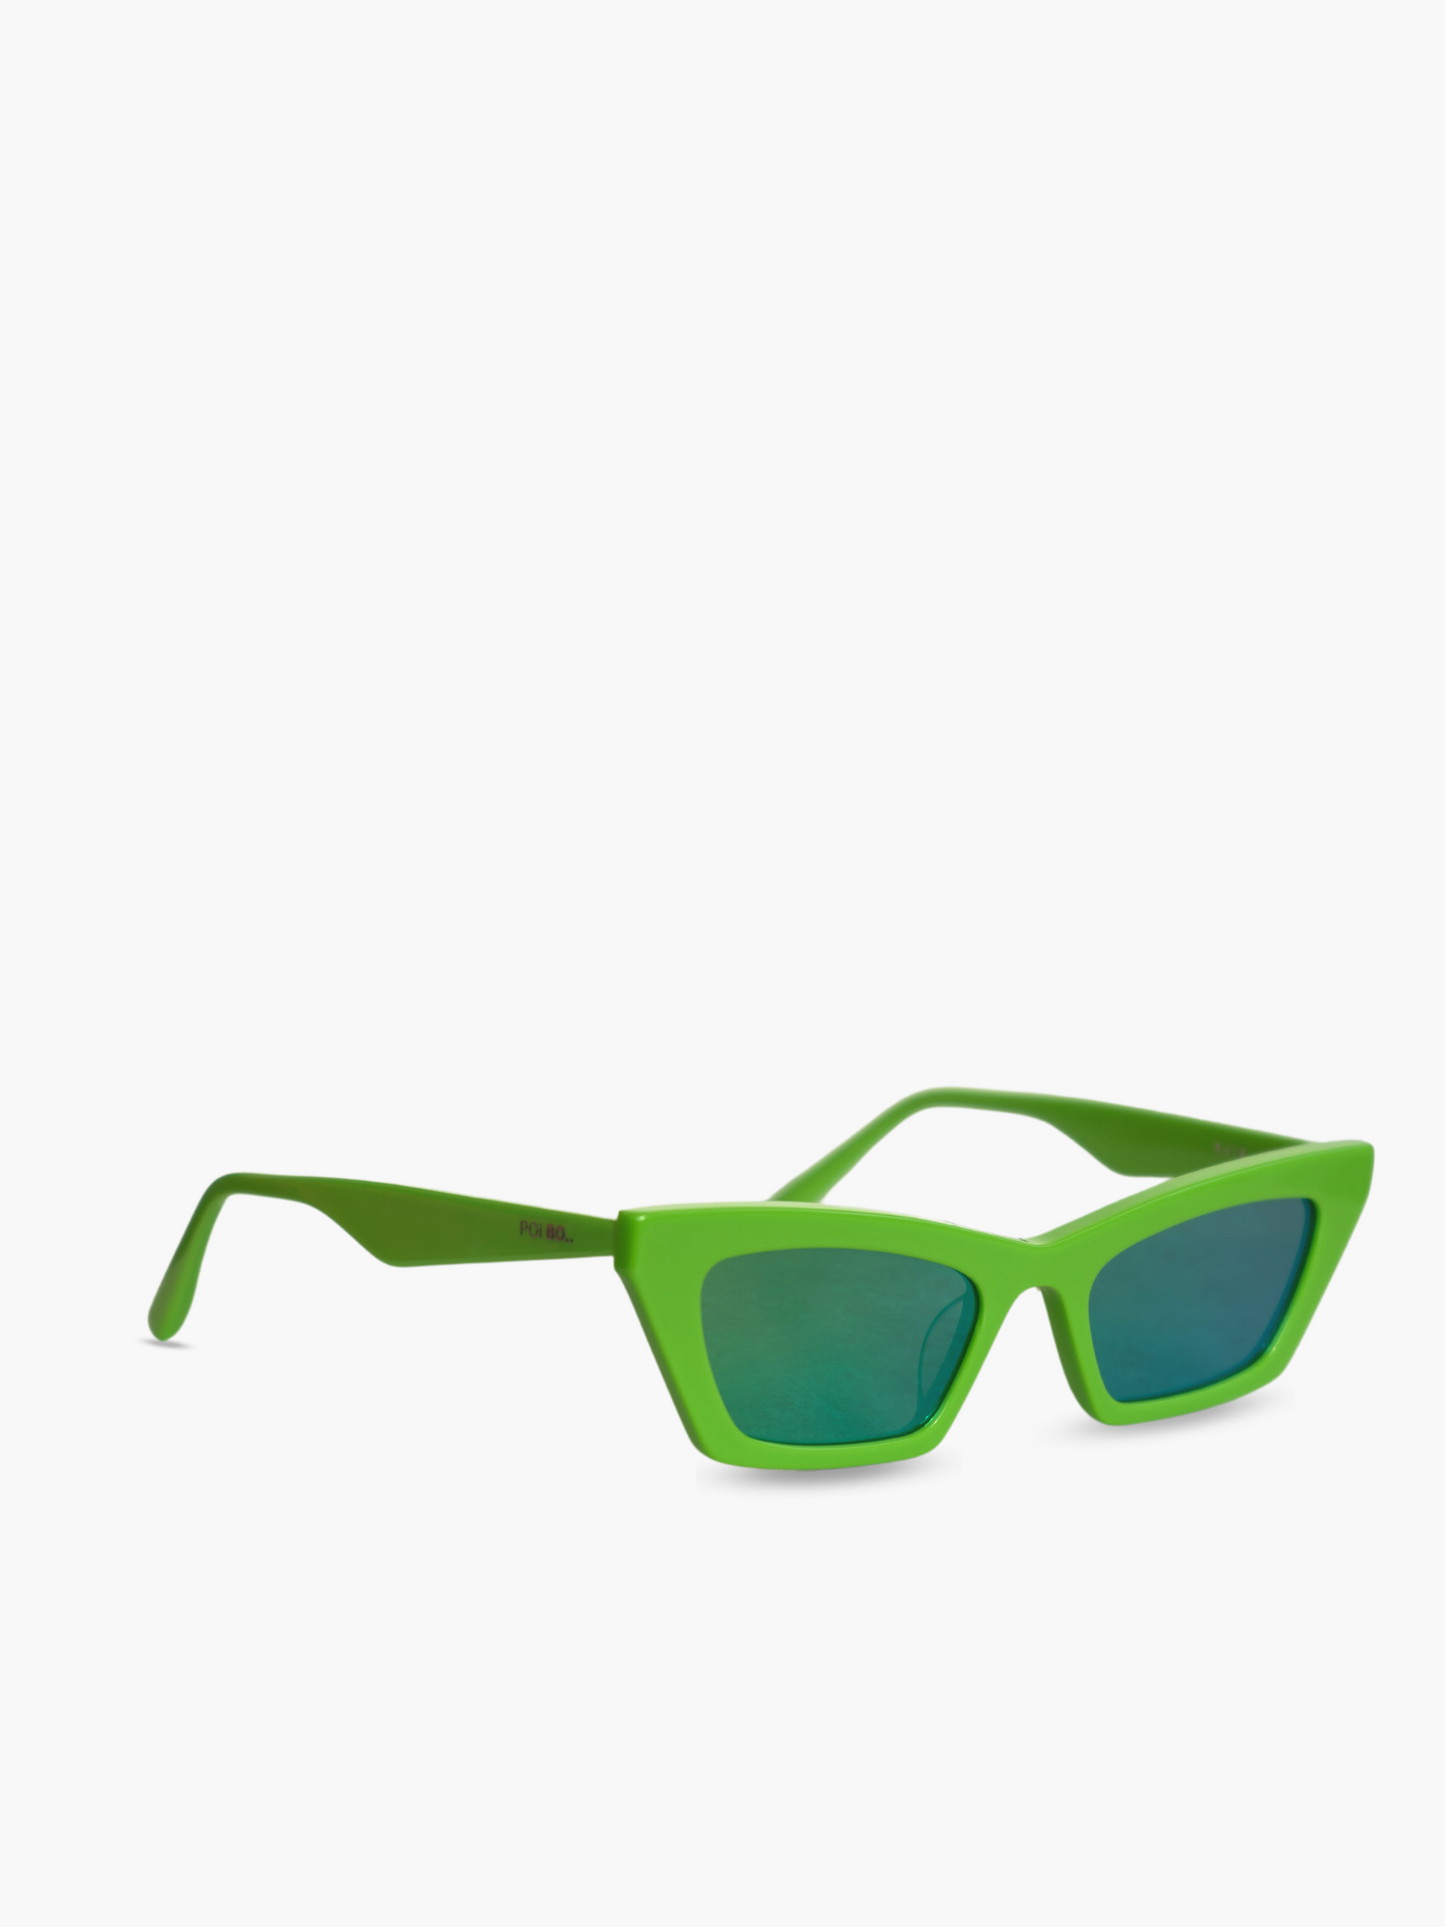 Occhiali da sole Modello Bold Neon Lime: montatura color verde acido con lenti specchiate con riflesso verde*.  Unisex e adatto alla maggior parte delle forme del viso. Le lenti sono antiriflesso e con protezione UV.